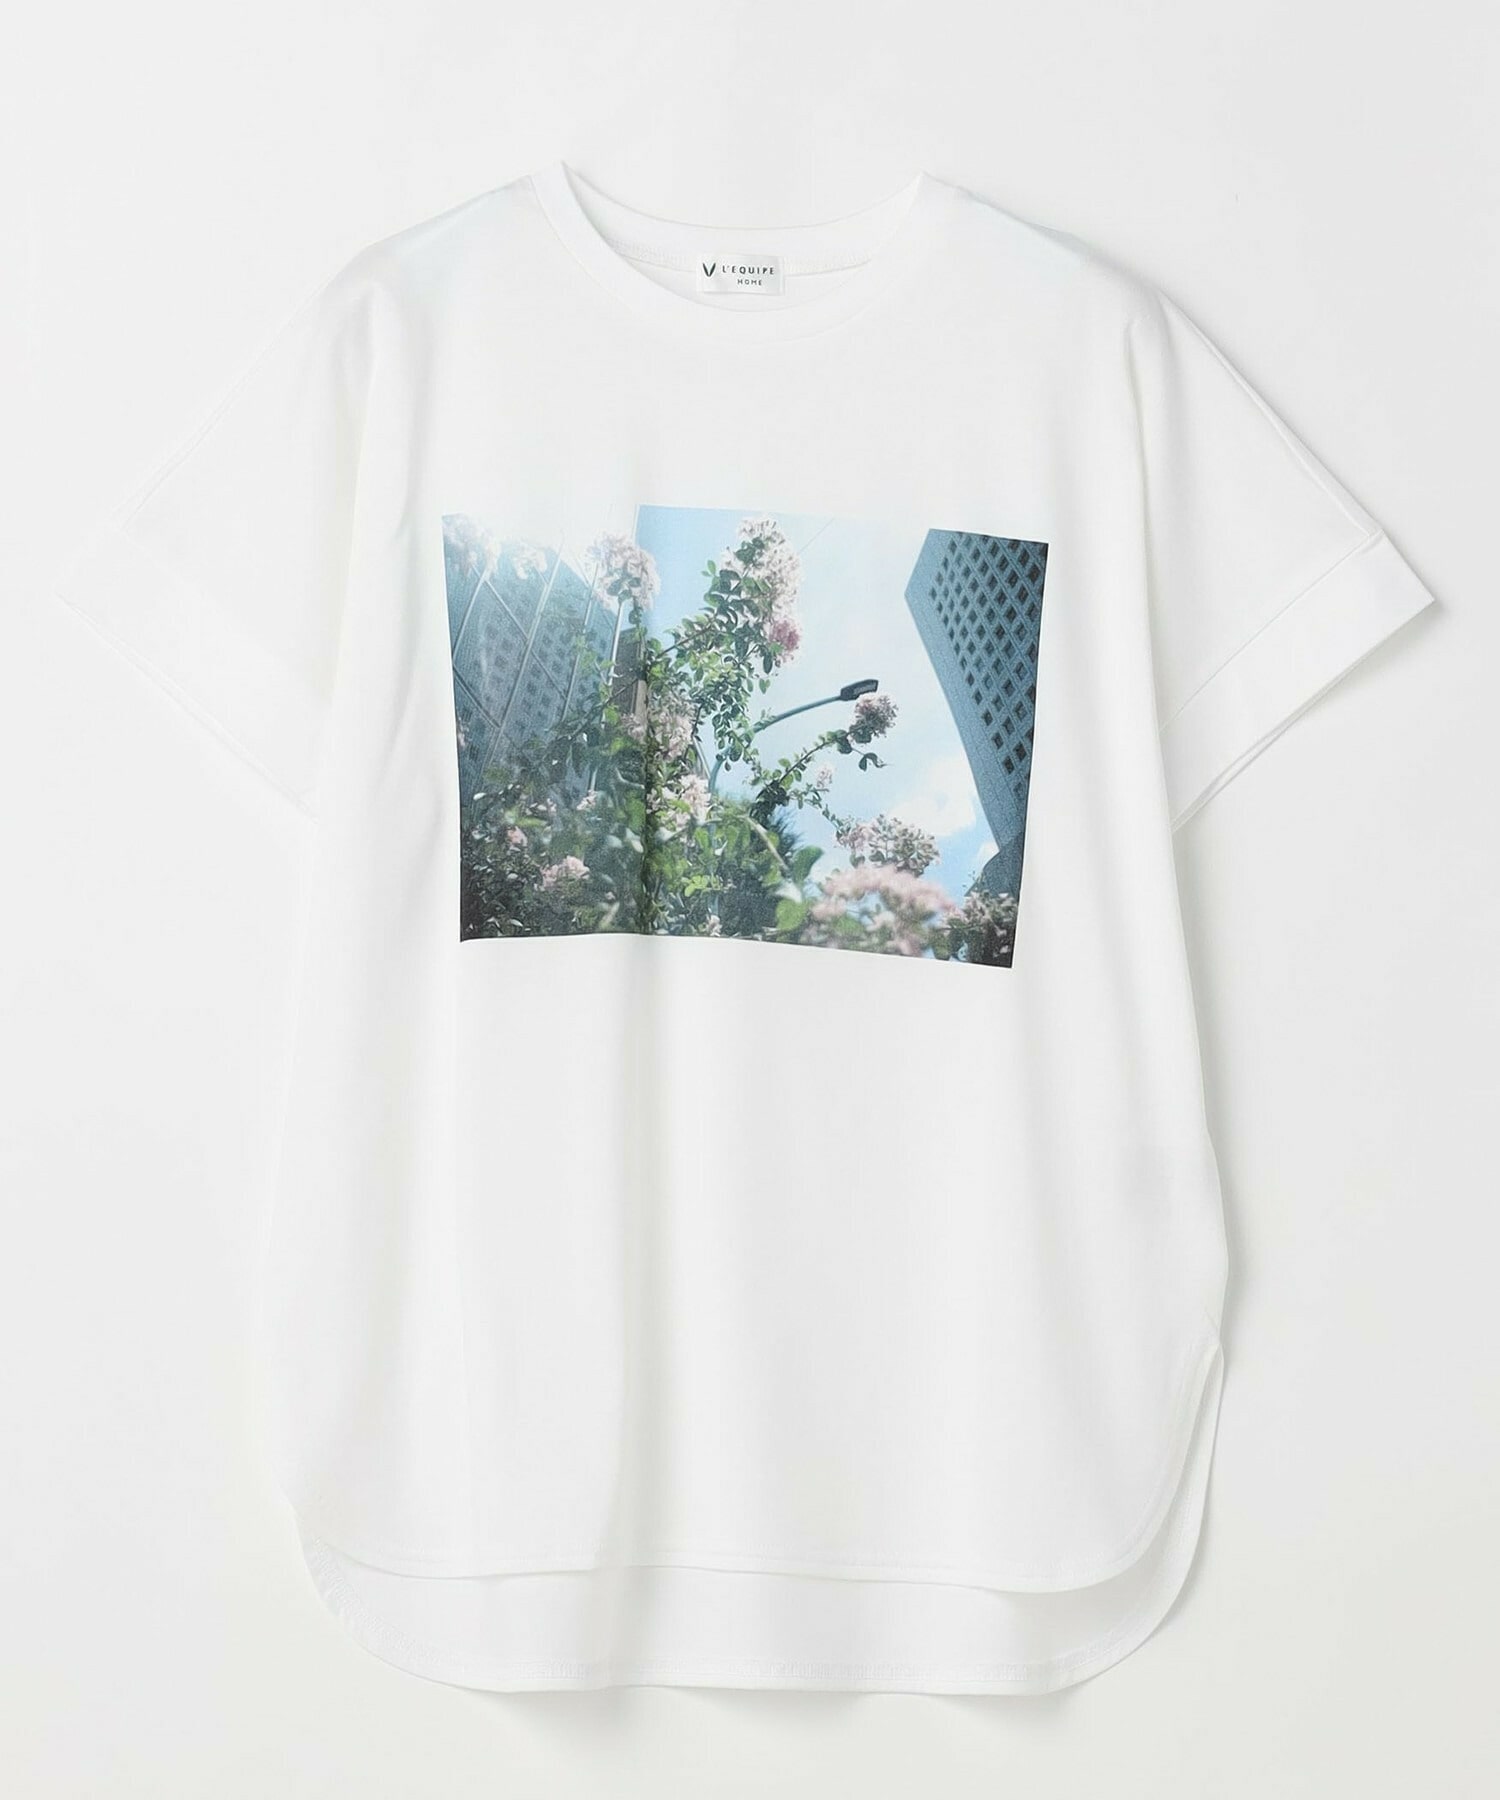 【HOME】【HOME】60/2天竺フォトプリントTシャツ 詳細画像 ホワイト 5